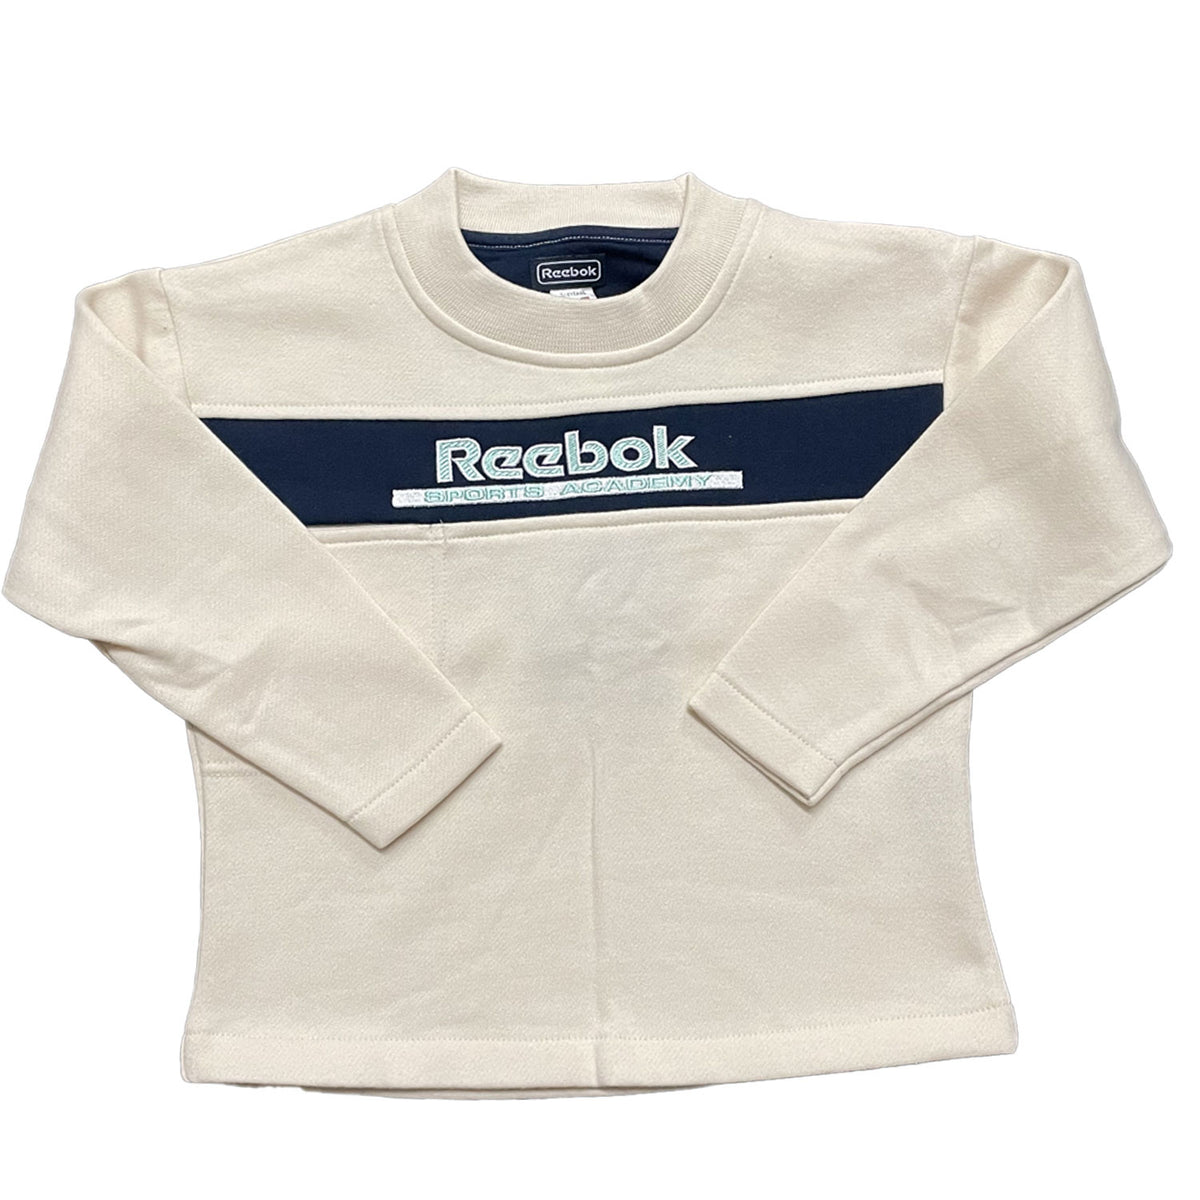 Reebok Infants Sports Sweatshirt 6